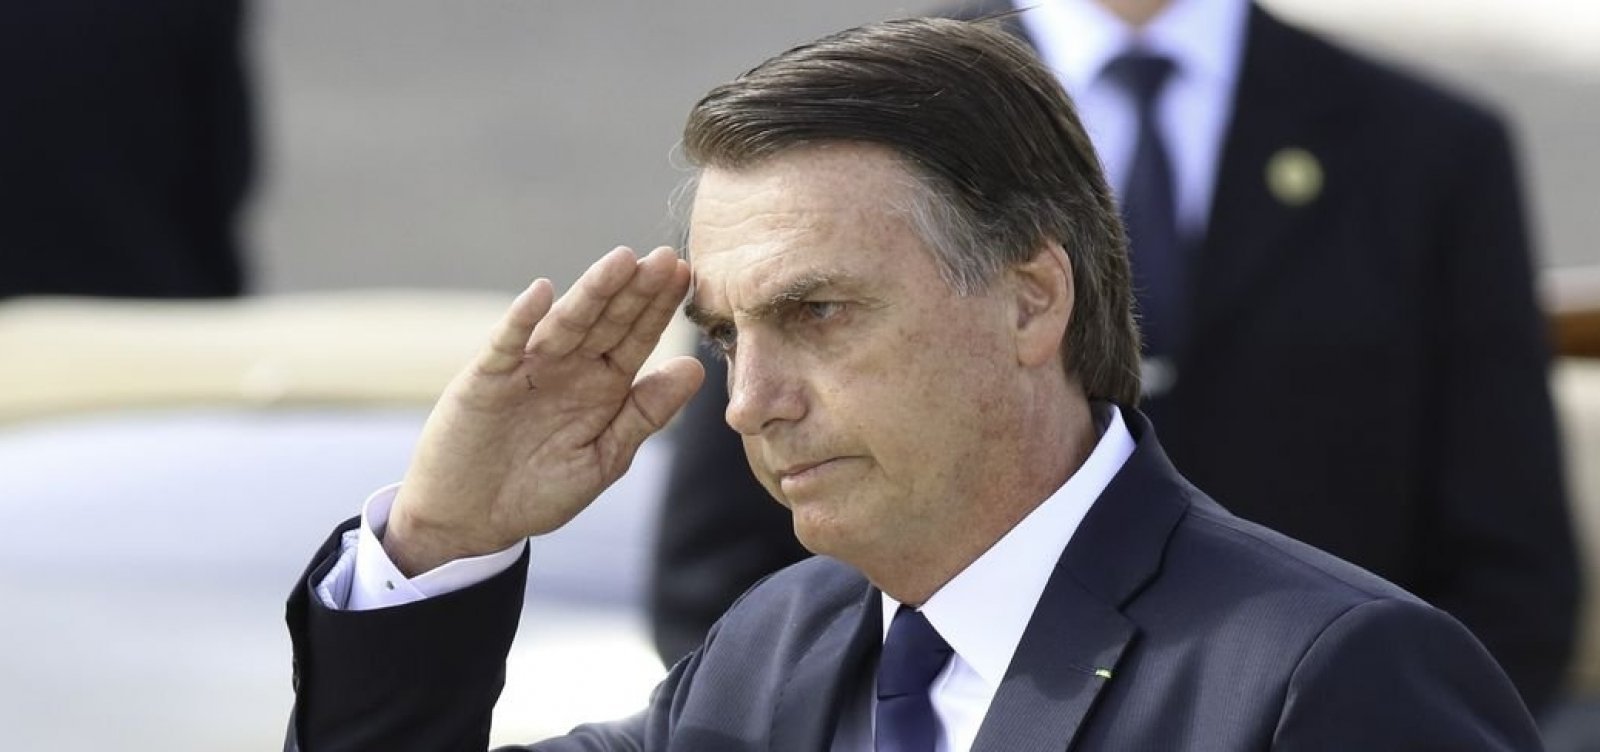 'Se eu levantar a minha caneta Bic e disser ‘Shazam!’, eu vou ser ditador', diz Bolsonaro